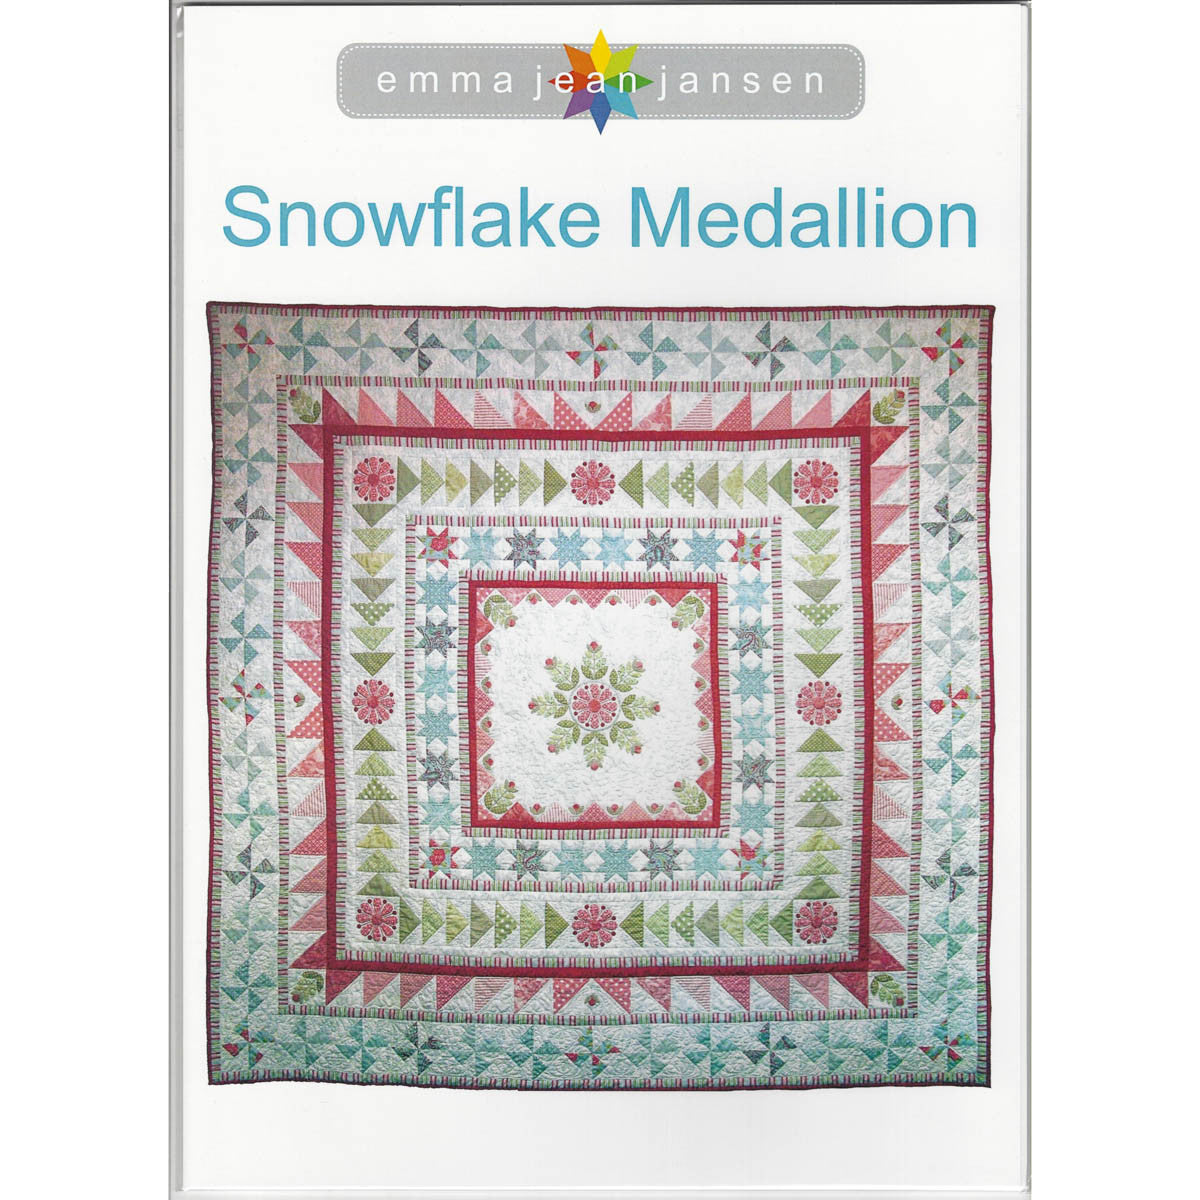 SNOWFLAKE MEDALLION - Quilt Pattern by Emma Jean Jansen